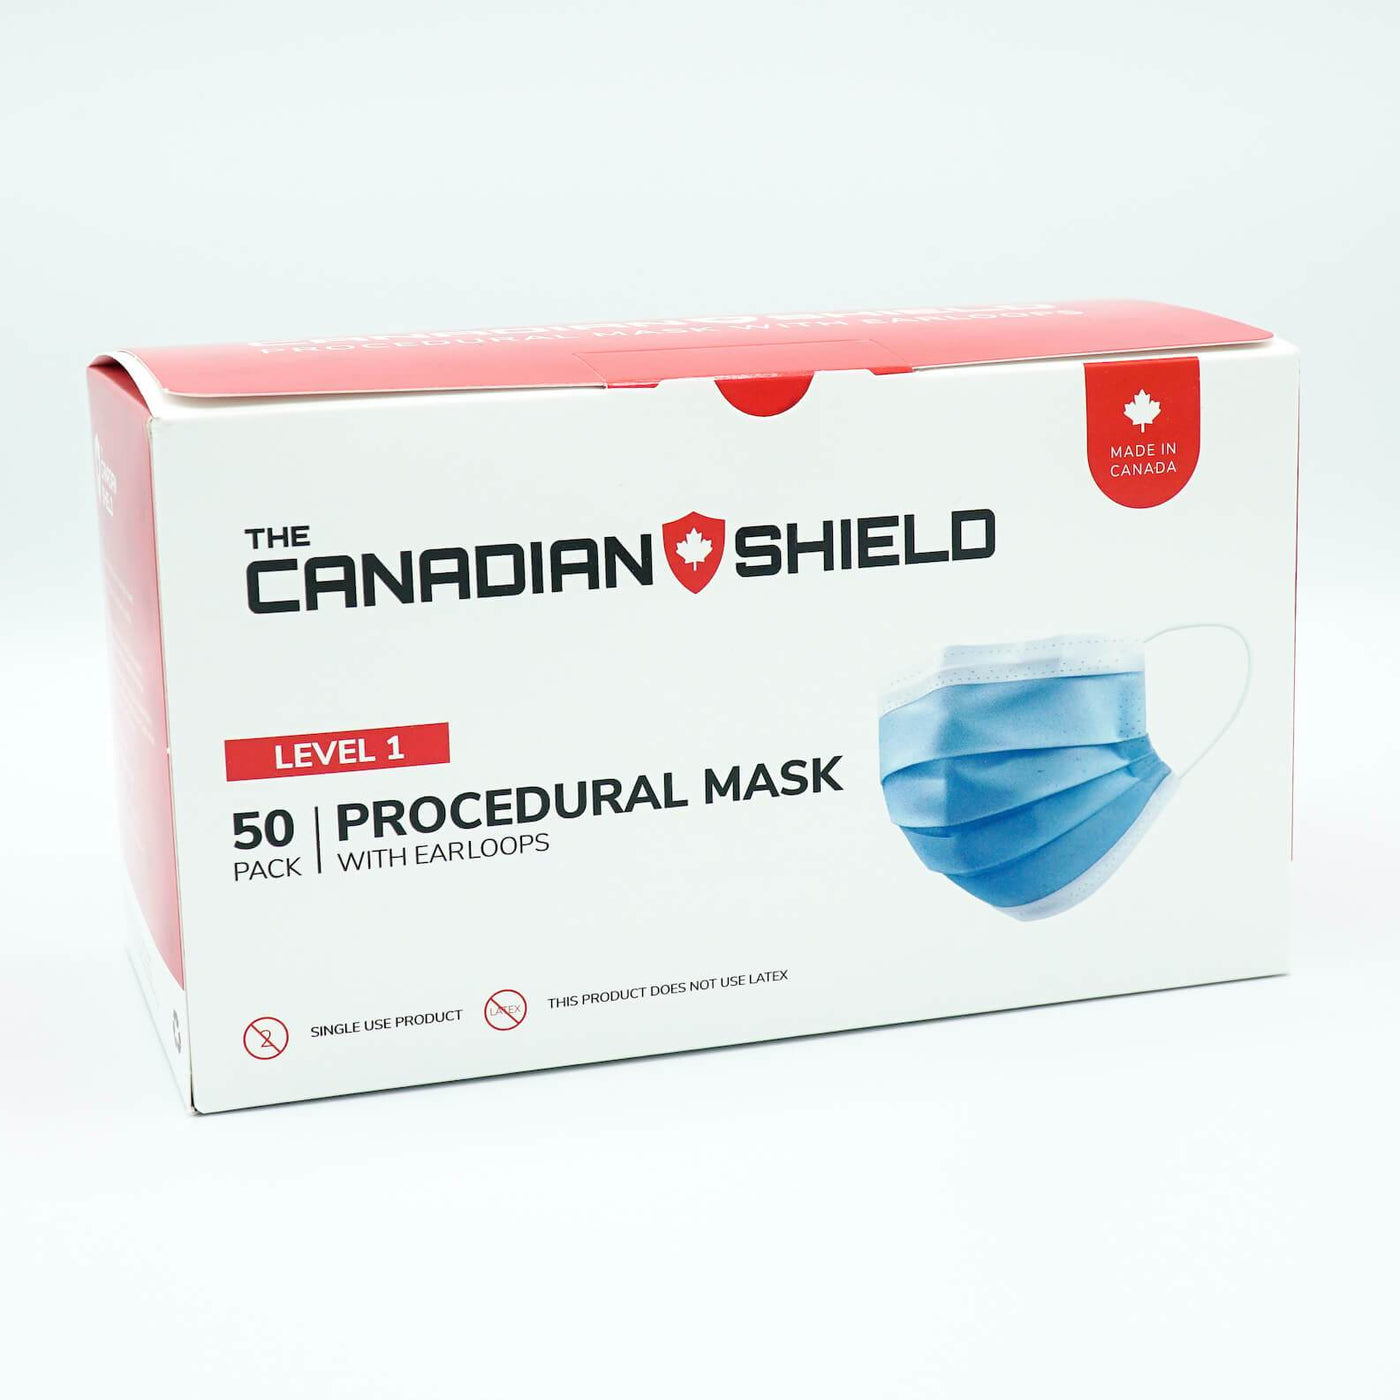 ASTM Level 1 Procedural Masks